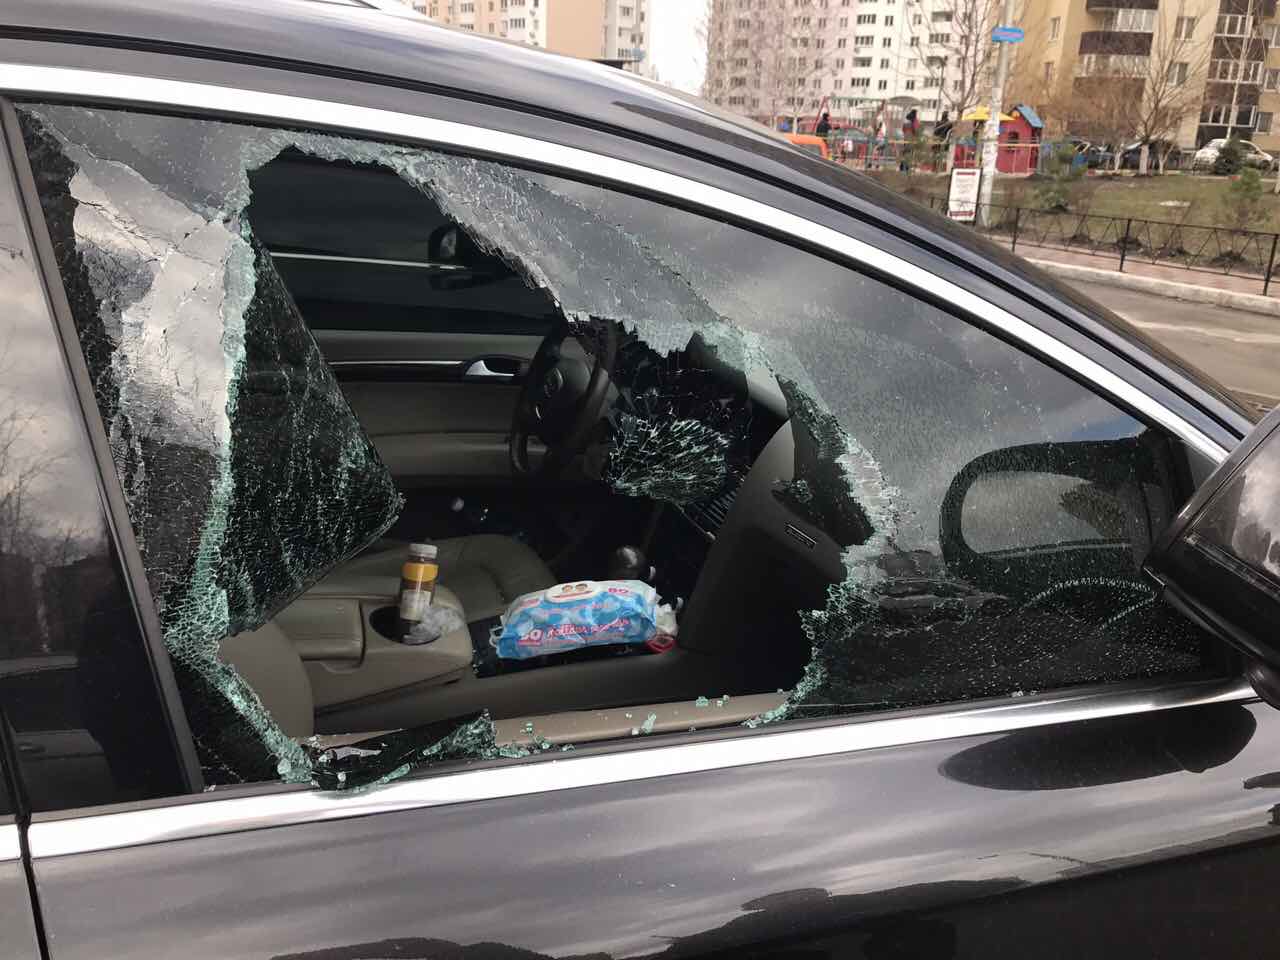 Разбиты окна машин. Разбитое окно машины. Разбить окно автомобиля. Разбитые стекла в машине. Разбил окно в машине.